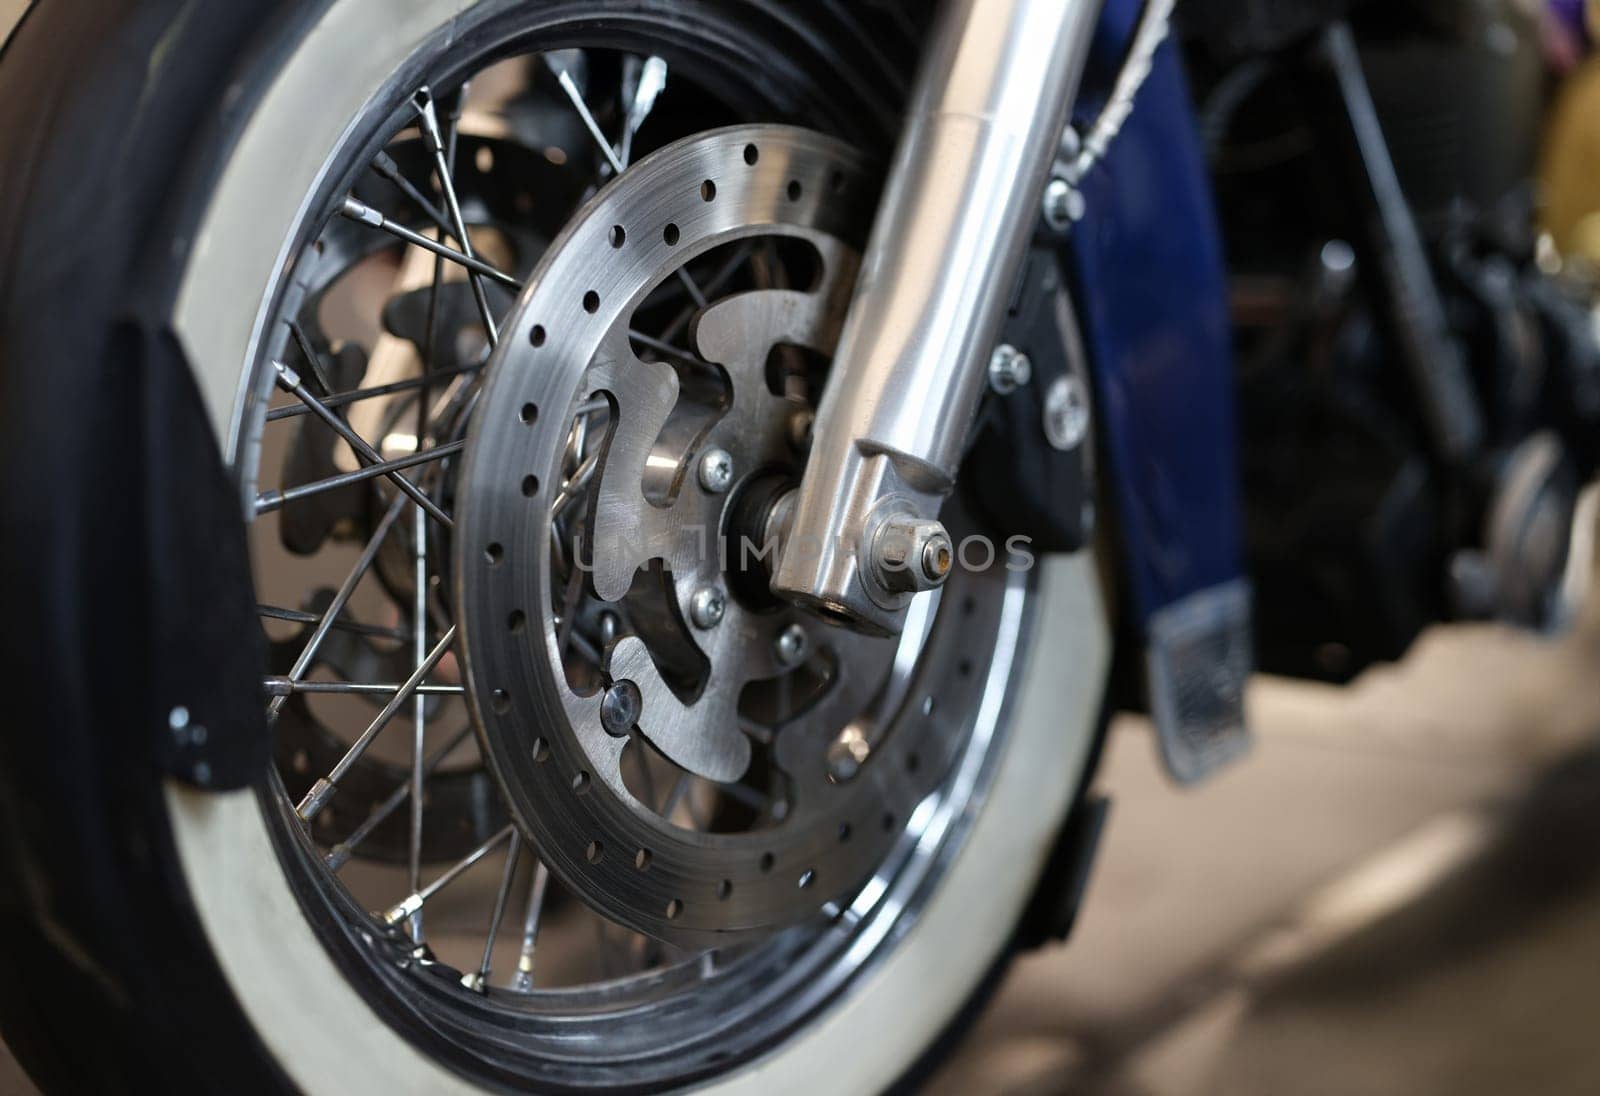 Closeup of brake disc on motorcycle wheel. Brake replacement motorcycle maintenance concept